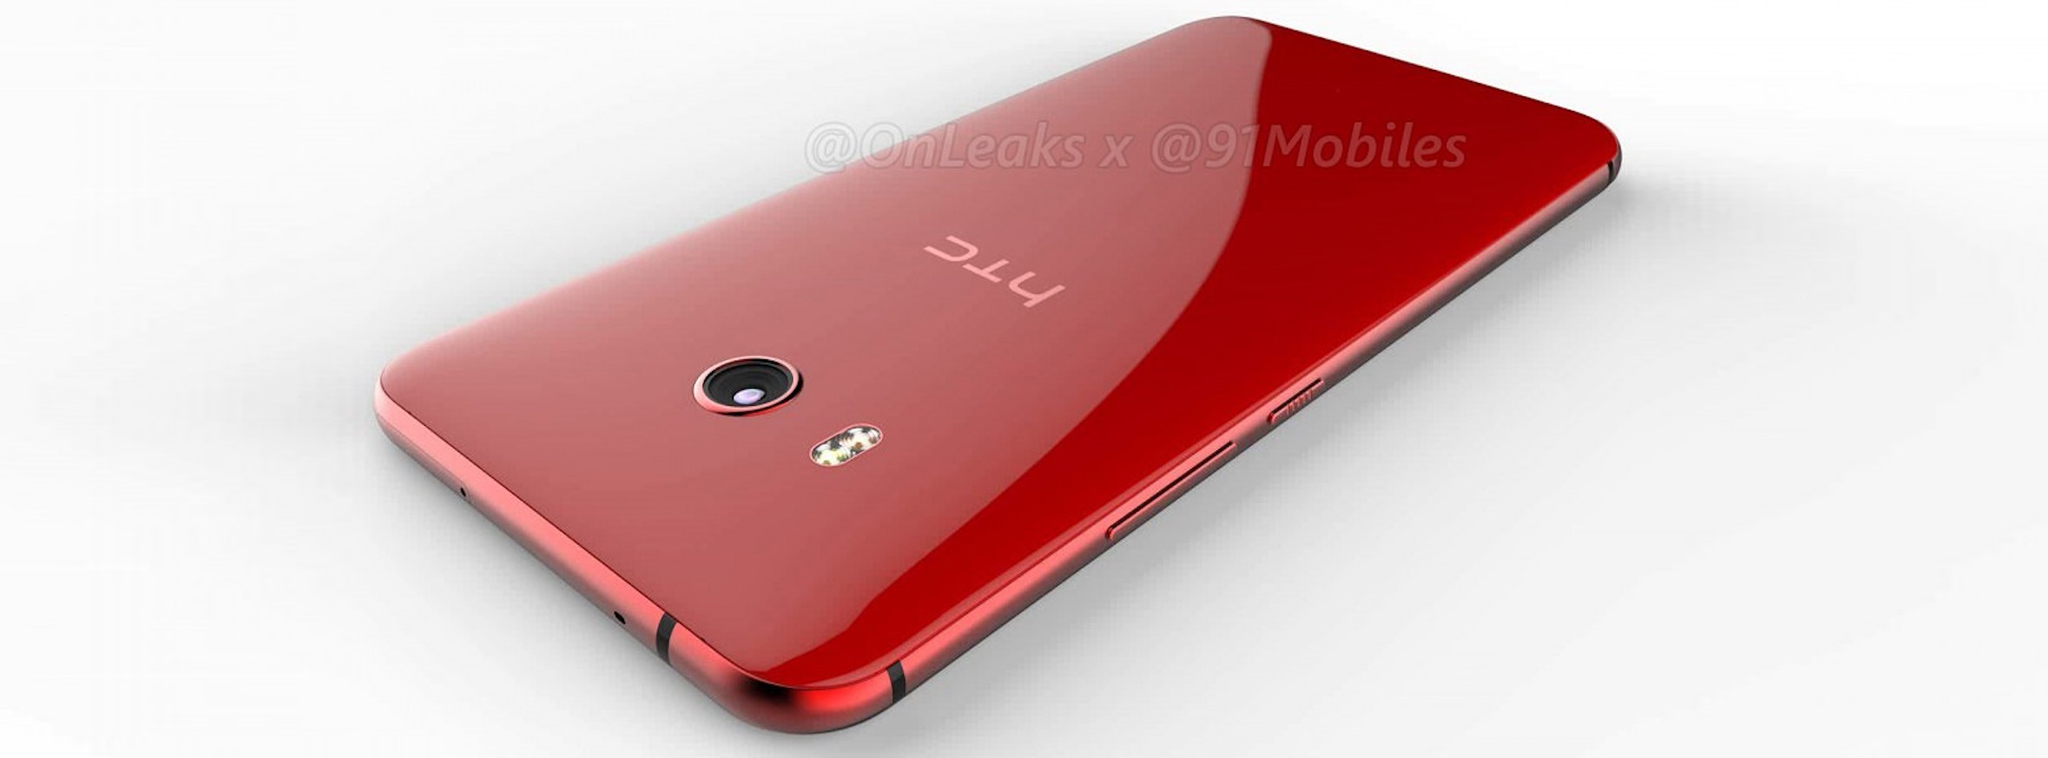 HTC U11 sẽ rẻ hơn khoảng 100$ so với HTC U Ultra, sẽ có trên tay vào thứ 3 tới